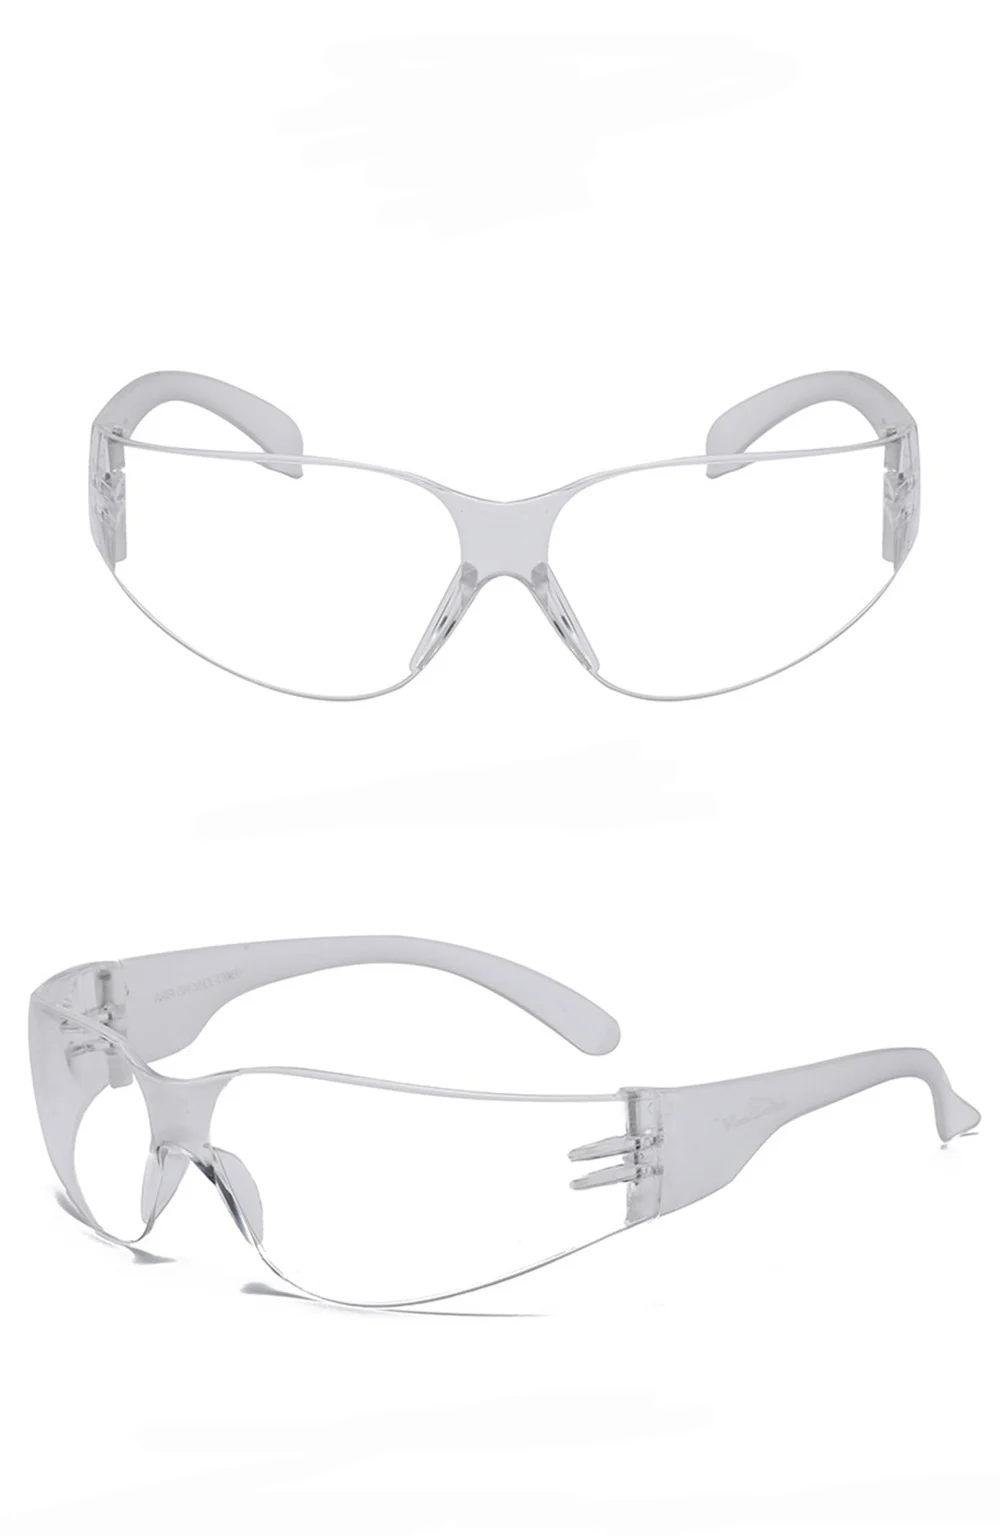 Поляризационные солнцезащитные очки Fulljion с защитой от ультрафиолета, очки для рыбалки, вождения, велоспорта, спортивные, уличные, Pesca, ветрозащитные очки